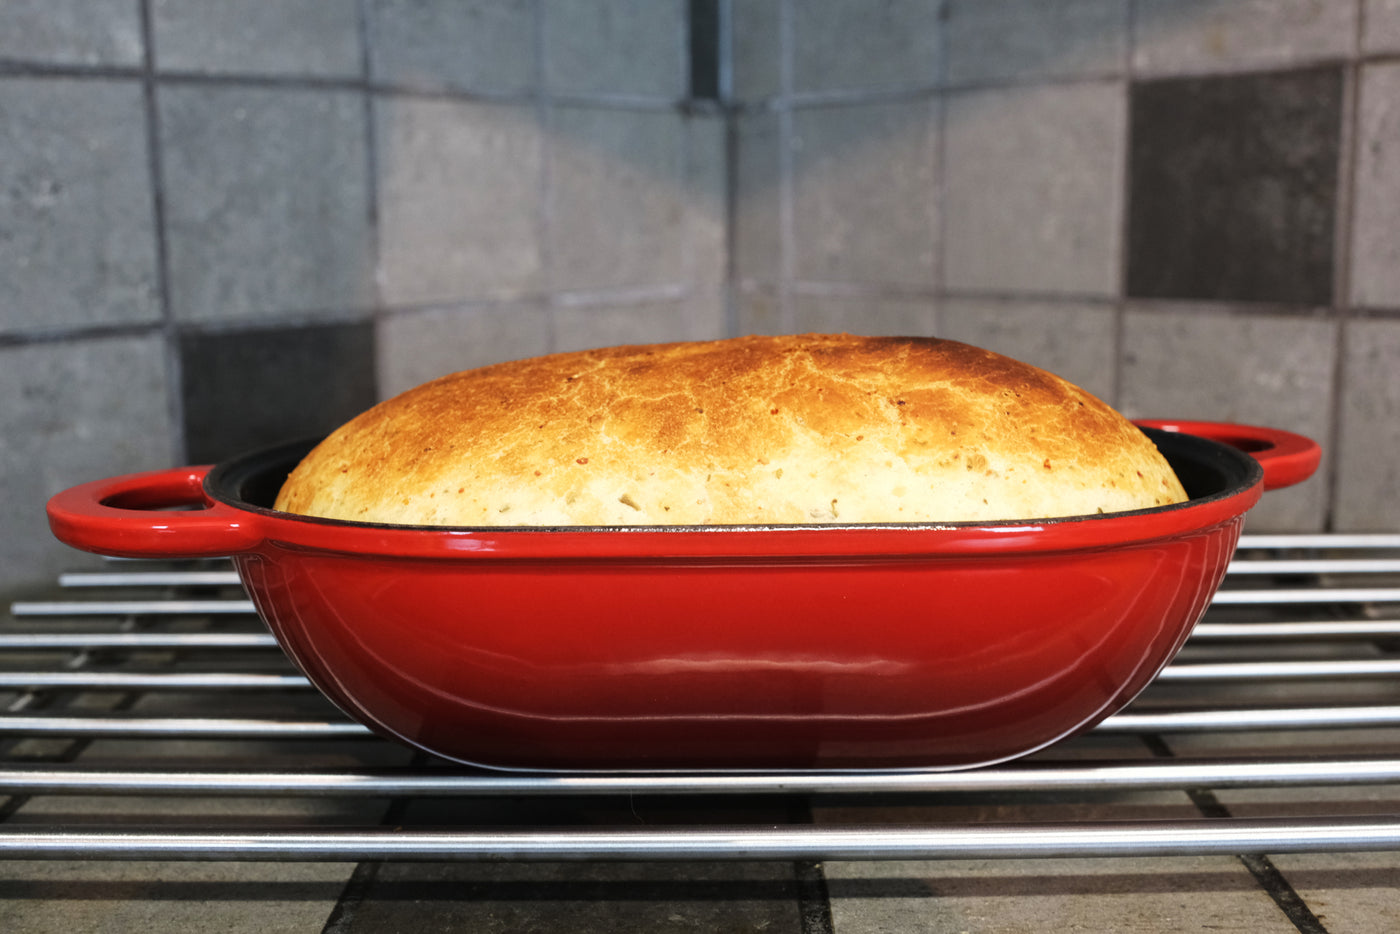 Geëmailleerde gietijzeren broodpan met deksel, rood, ovenveilige vorm voor bakken, ambachtelijke broodset - broodvorm